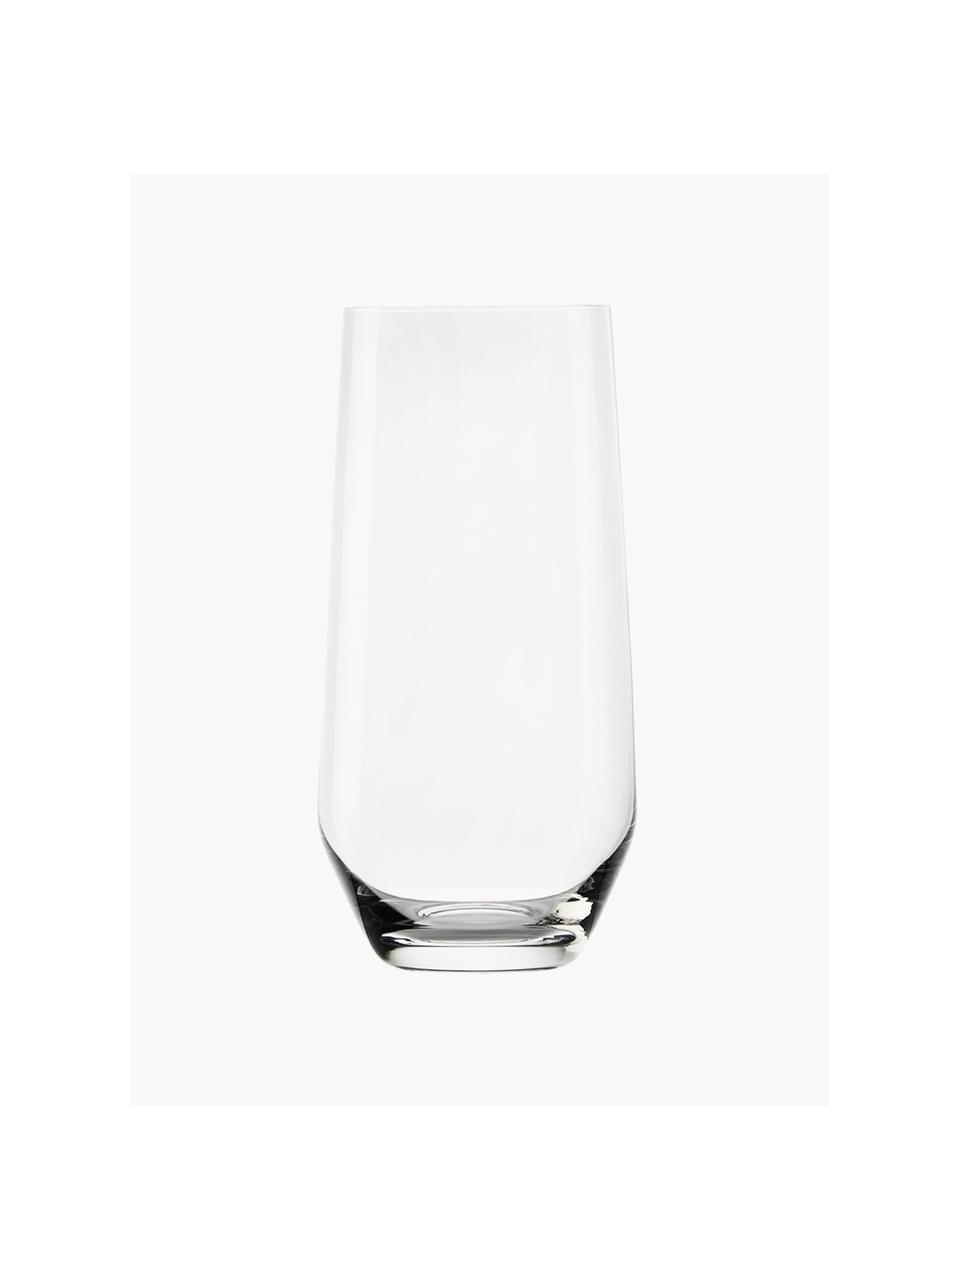 Bicchieri alti in cristallo Revolution 6 pz, Cristallo, Trasparente, Ø 7 x Alt. 14 cm, 360 ml